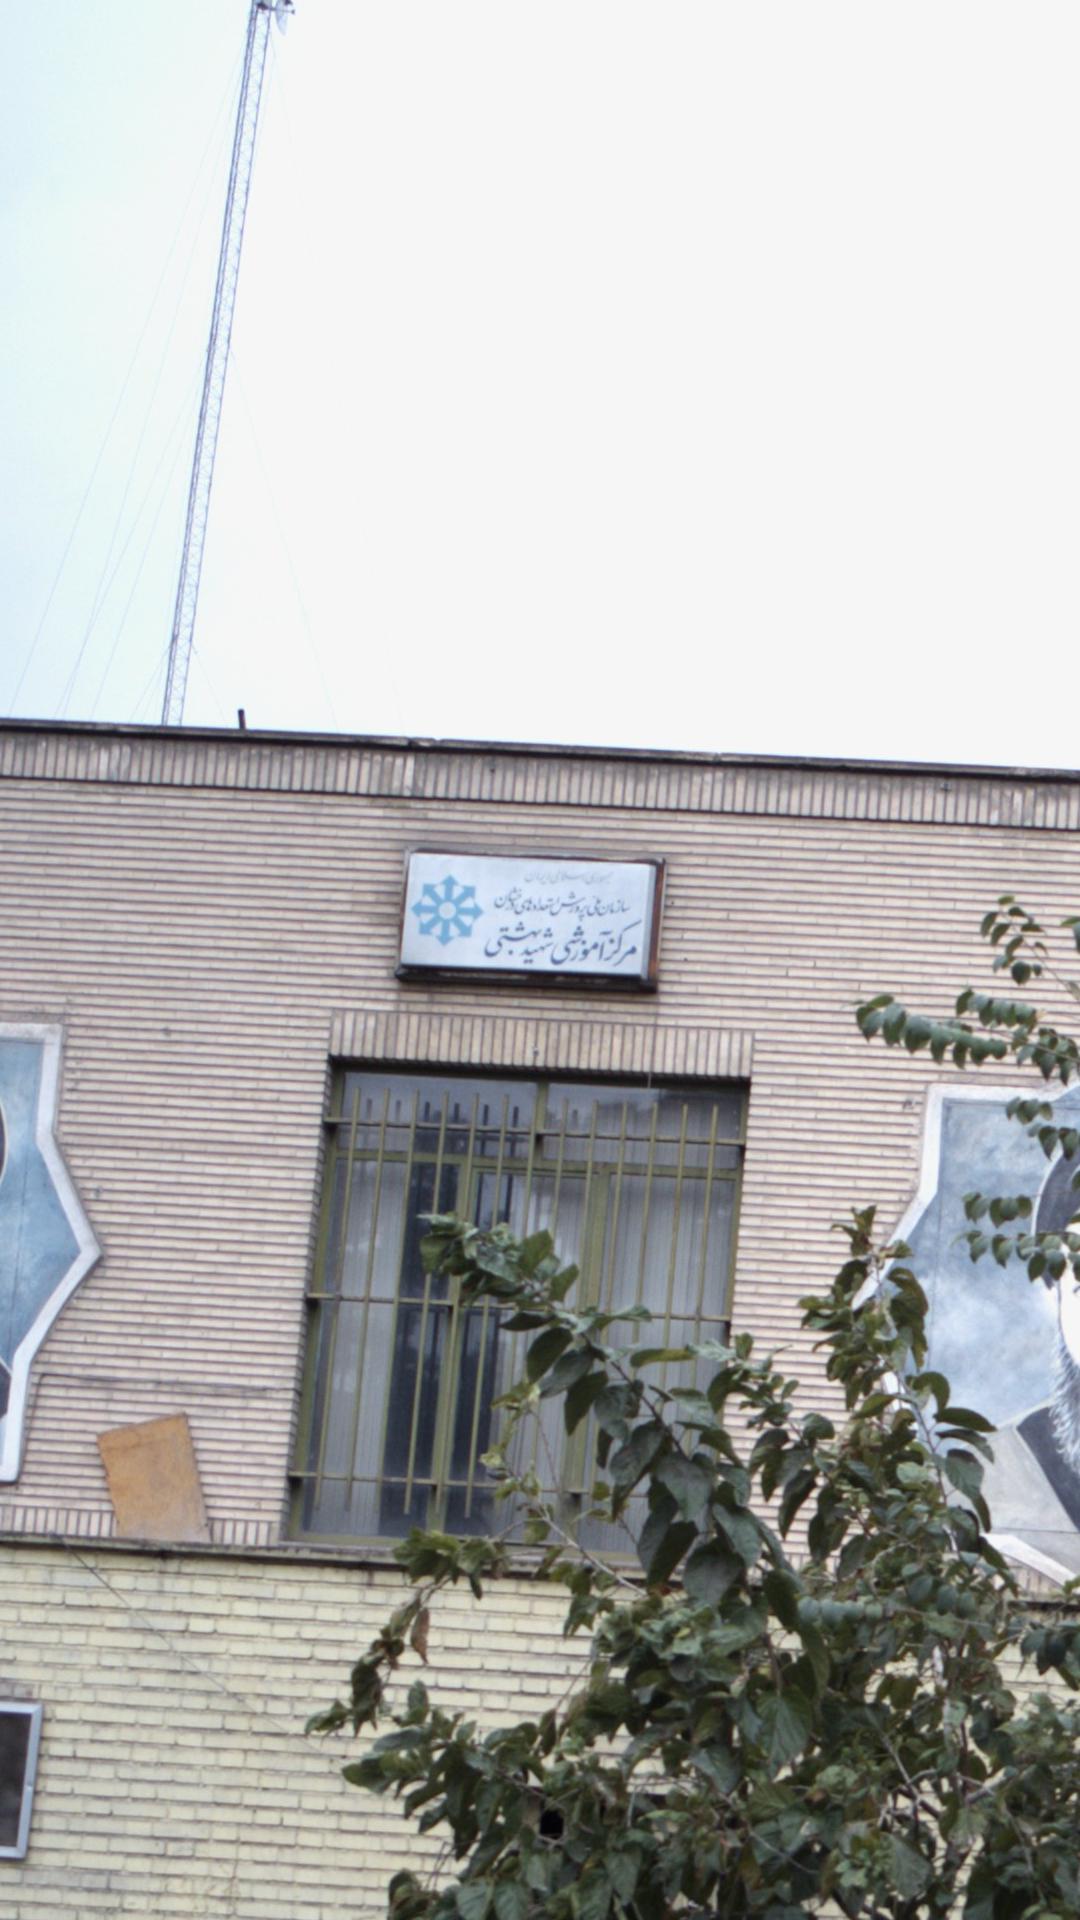 مرکز آموزشی شهید بهشتی